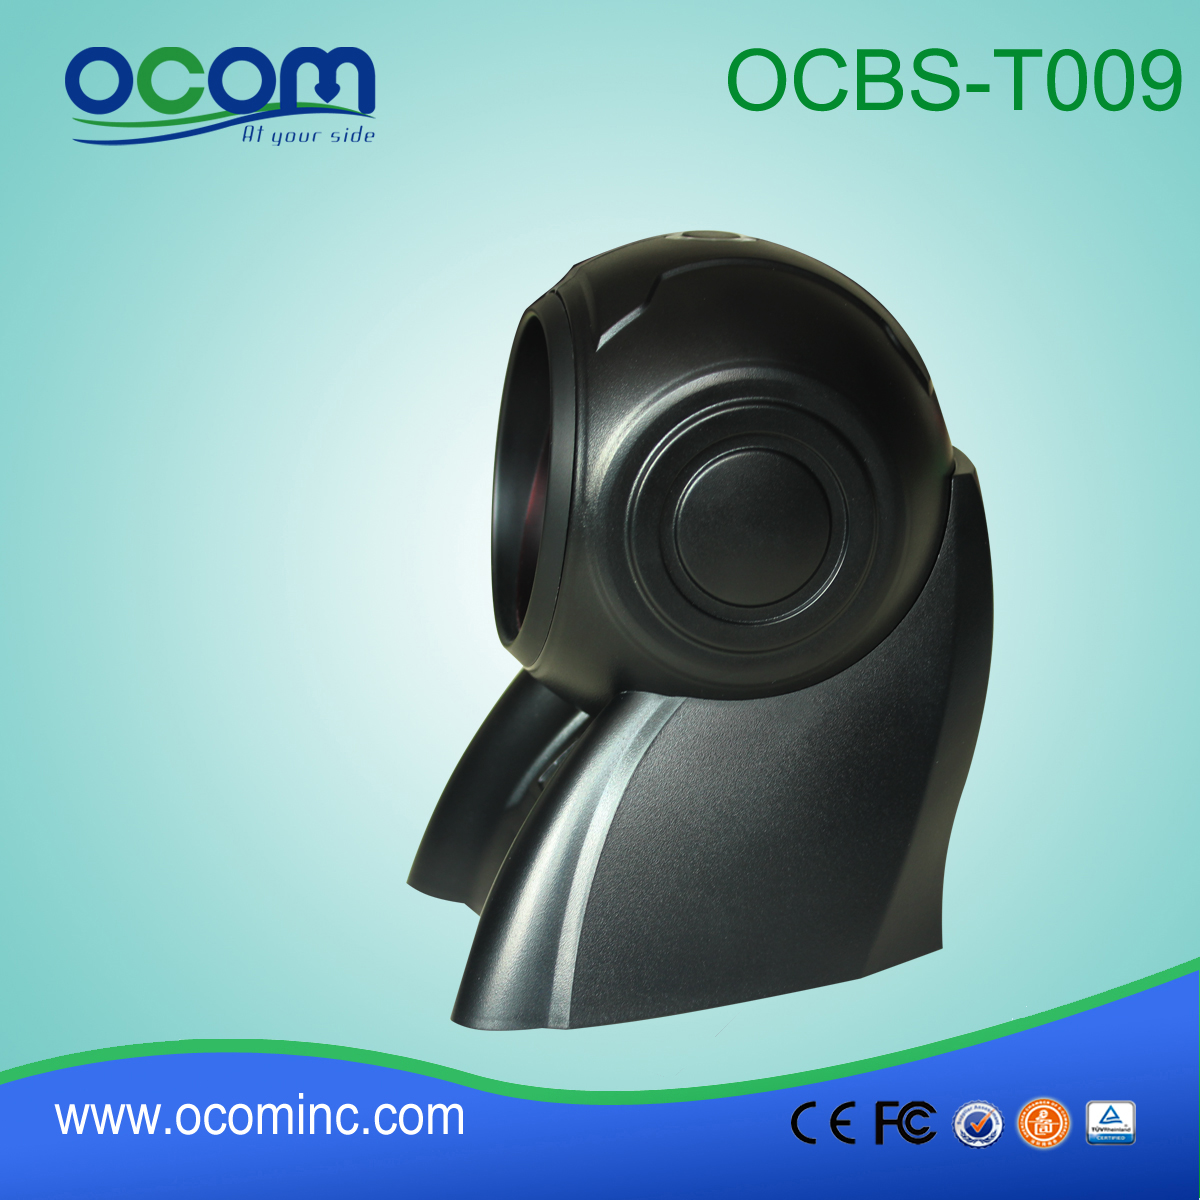 الباركود الليزر الثابتة جبل Omini USB الماسح الضوئي (OCBS-T009)